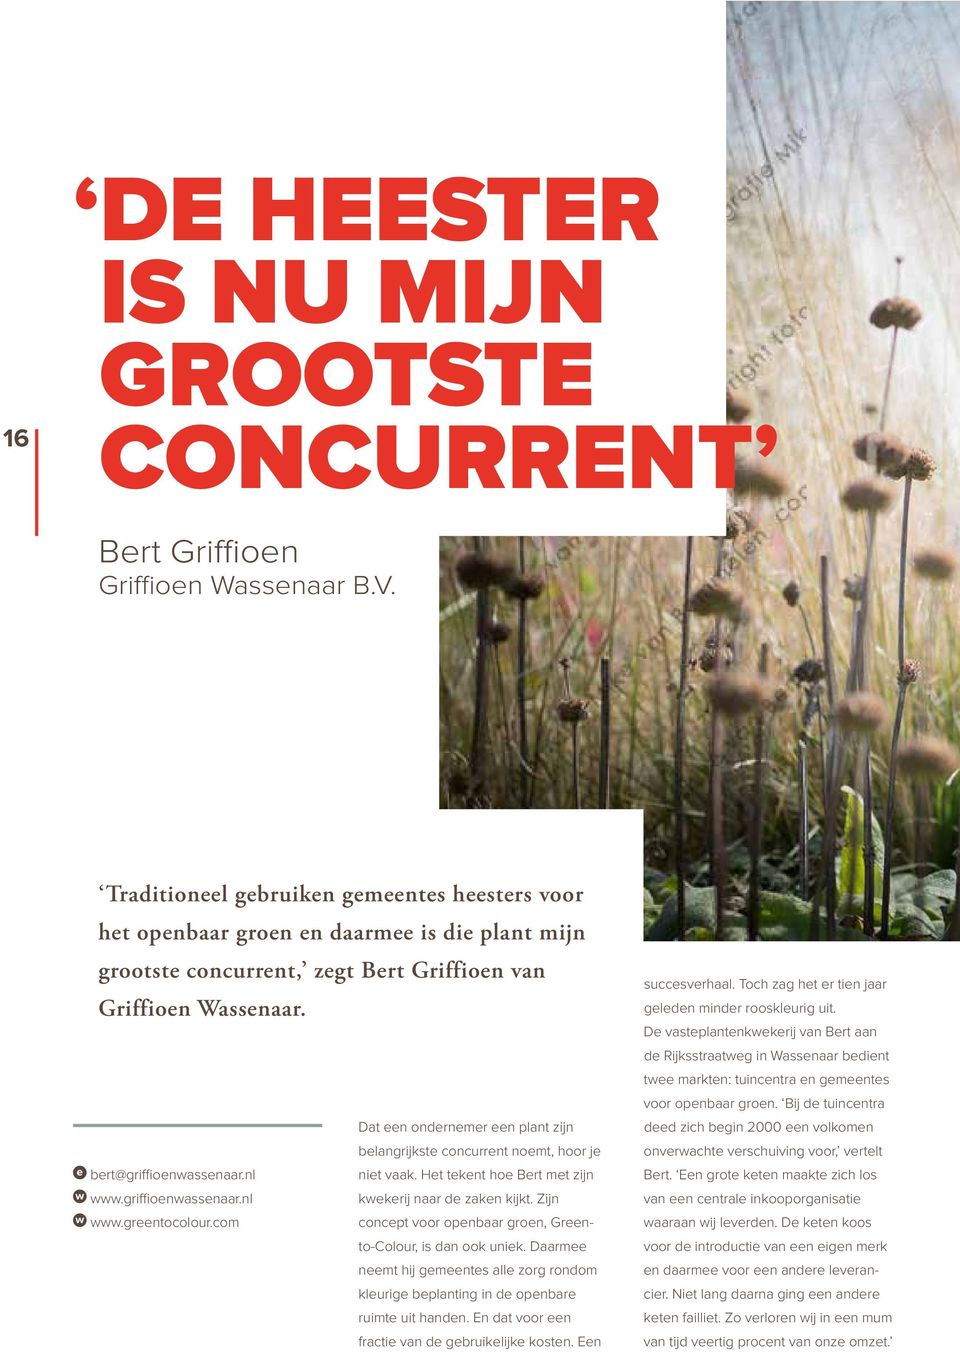 Dat een ondernemer een plant zijn belangrijkste concurrent noemt, hoor je e bert@griffioenwassenaar.nl niet vaak. Het tekent hoe Bert met zijn w www.griffioenwassenaar.nl kwekerij naar de zaken kijkt.